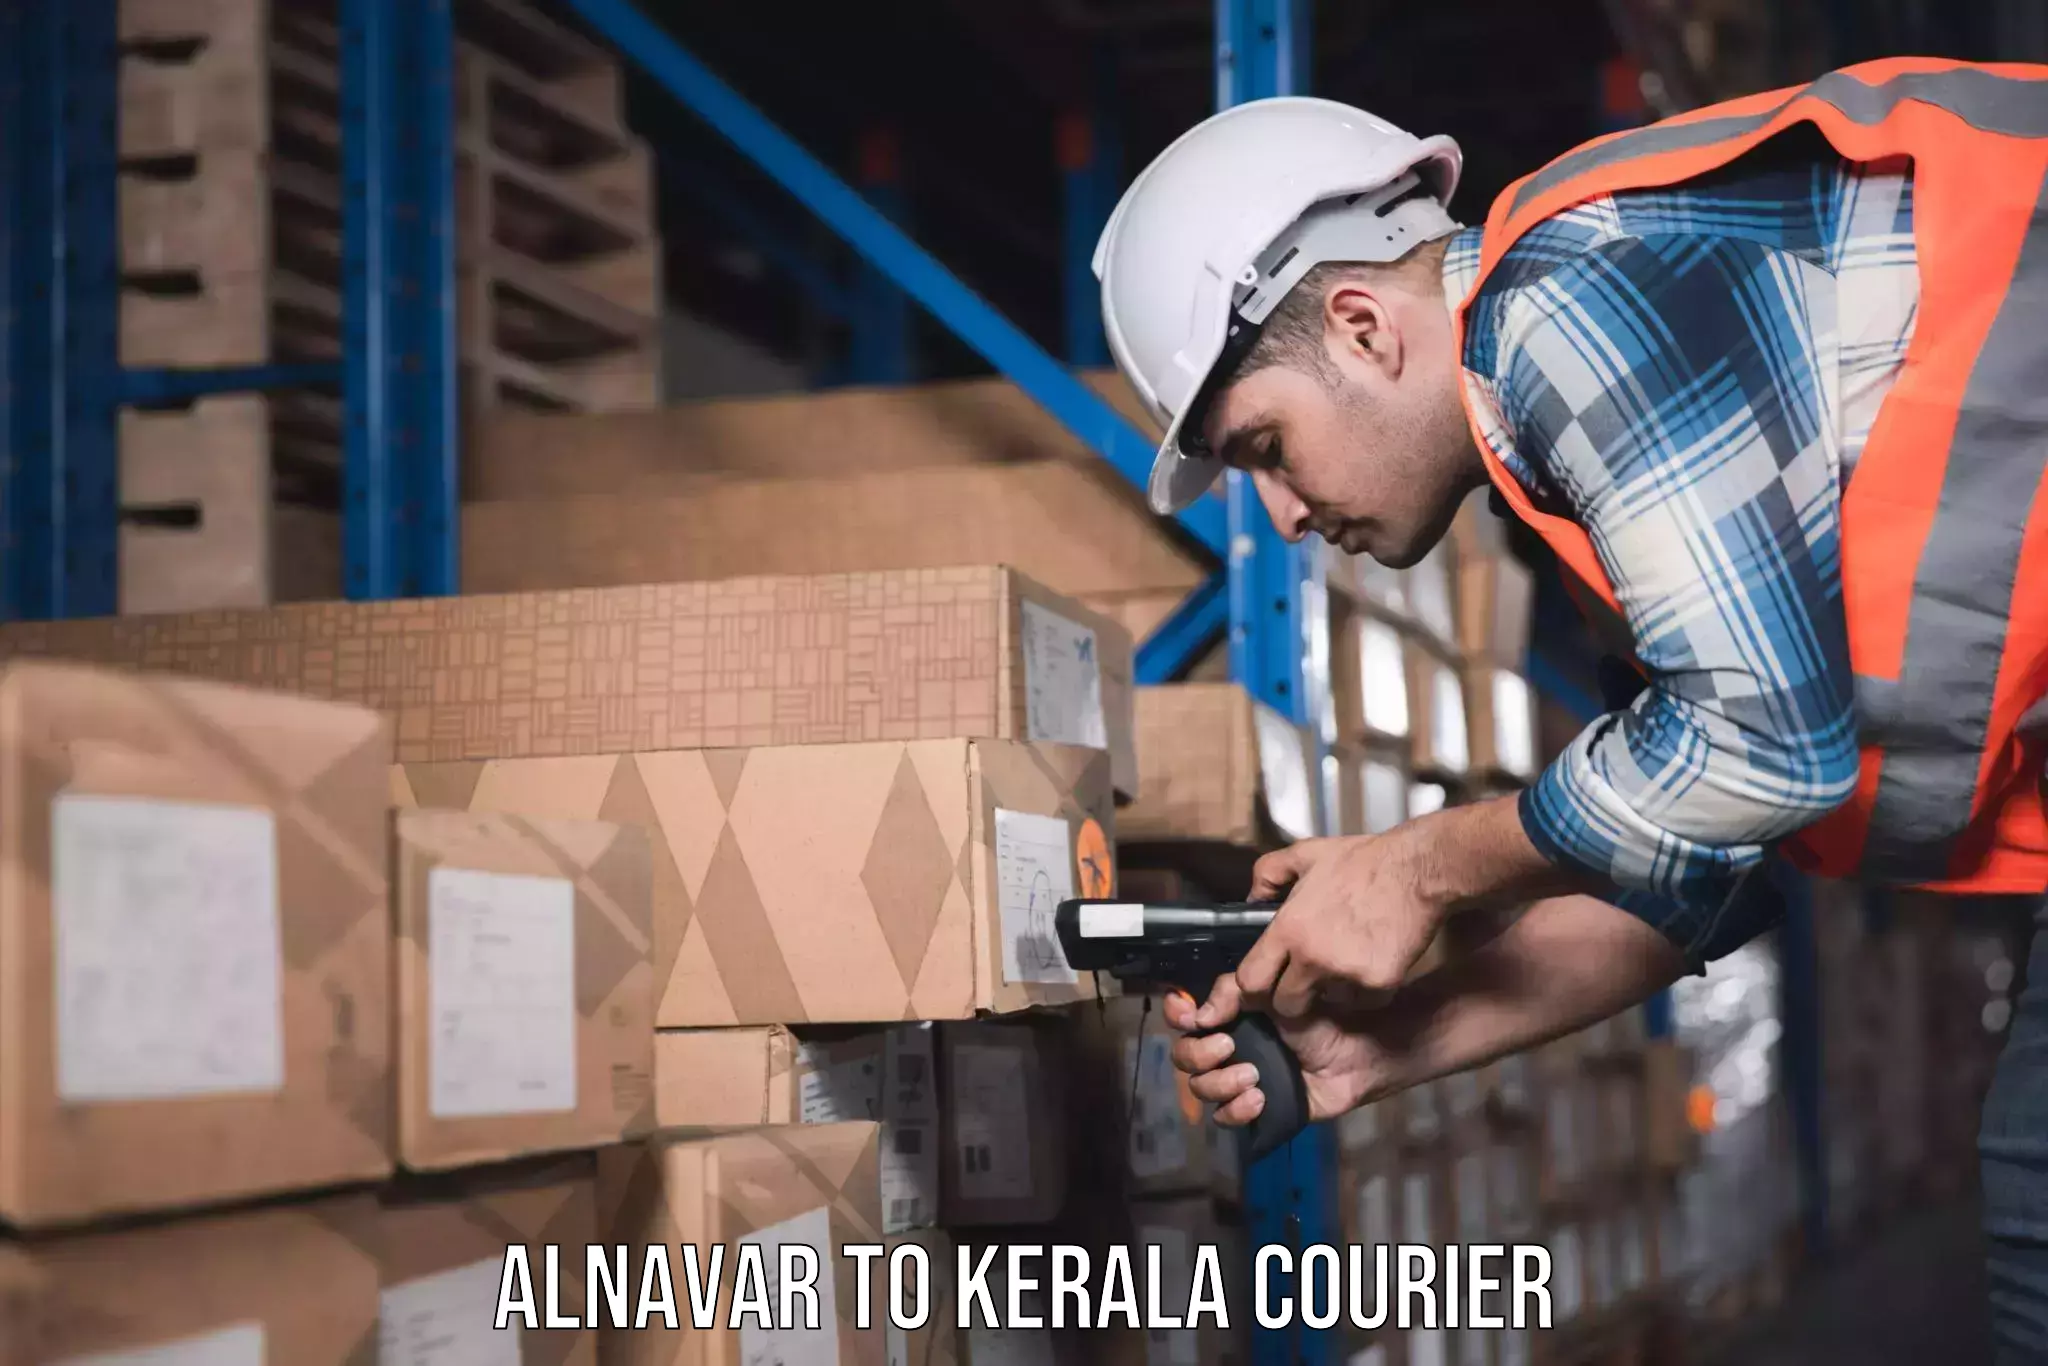 Home goods moving company Alnavar to Kerala